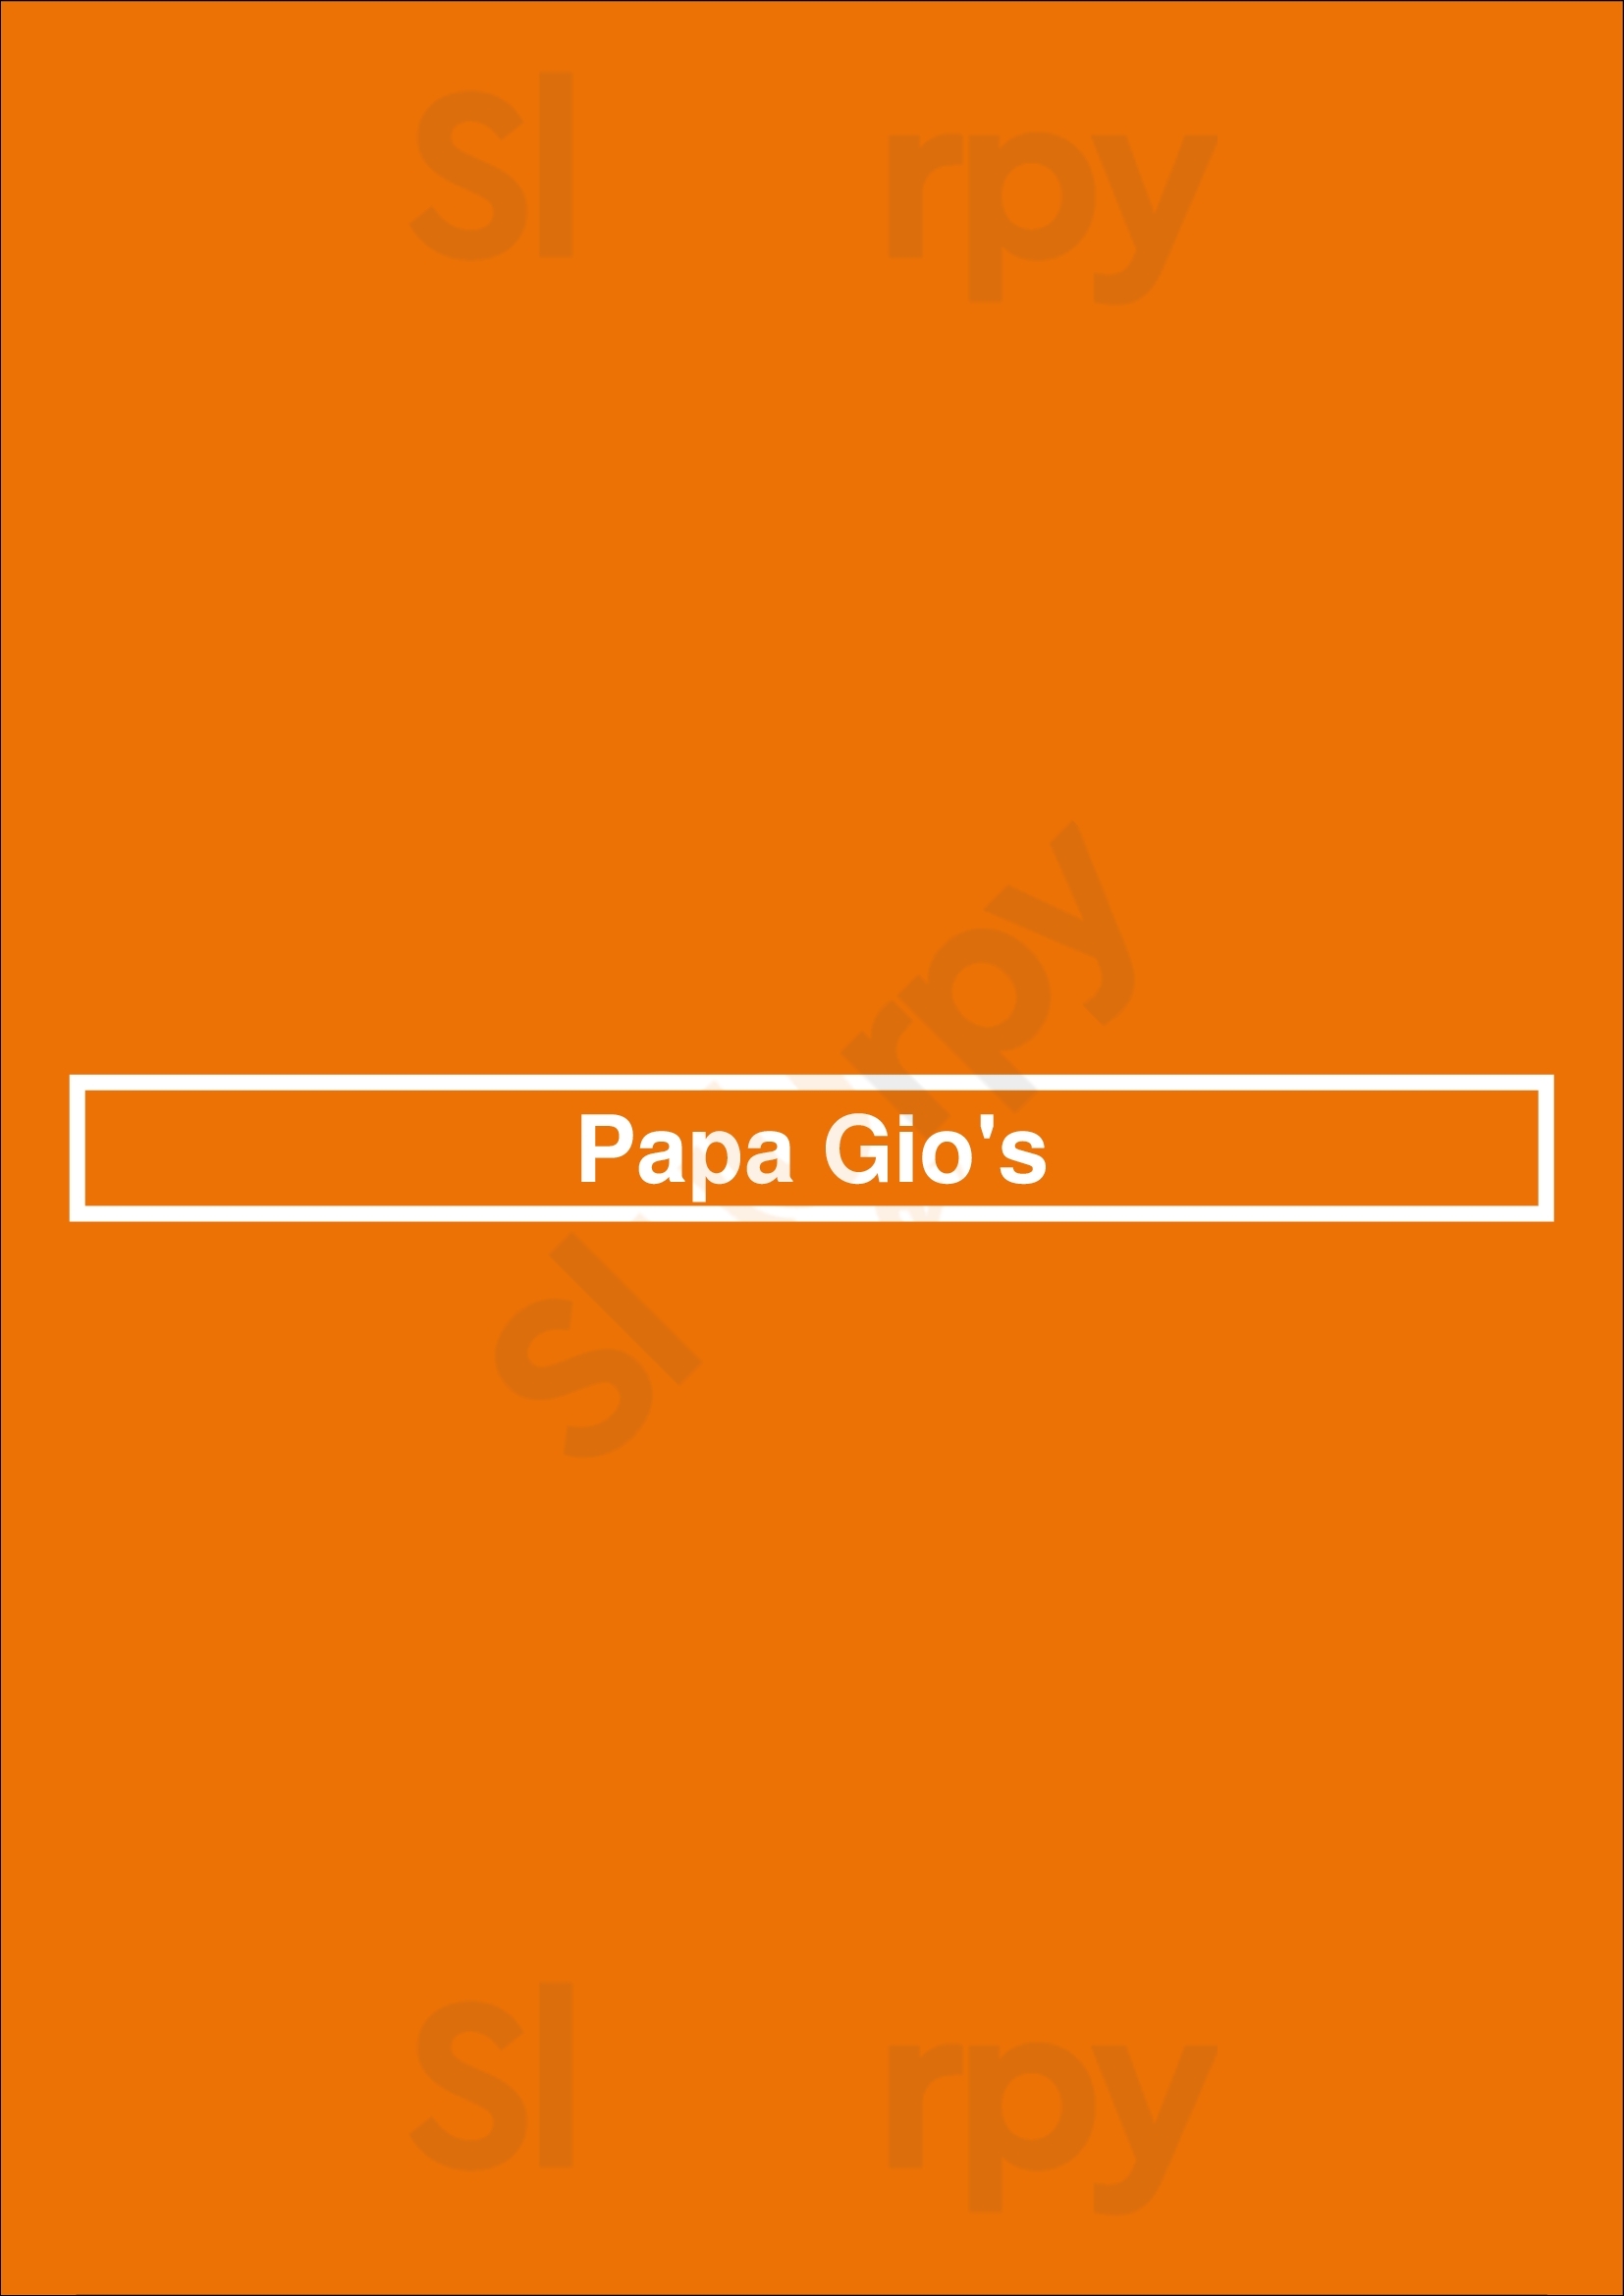 Papa Gio's Lexington Menu - 1